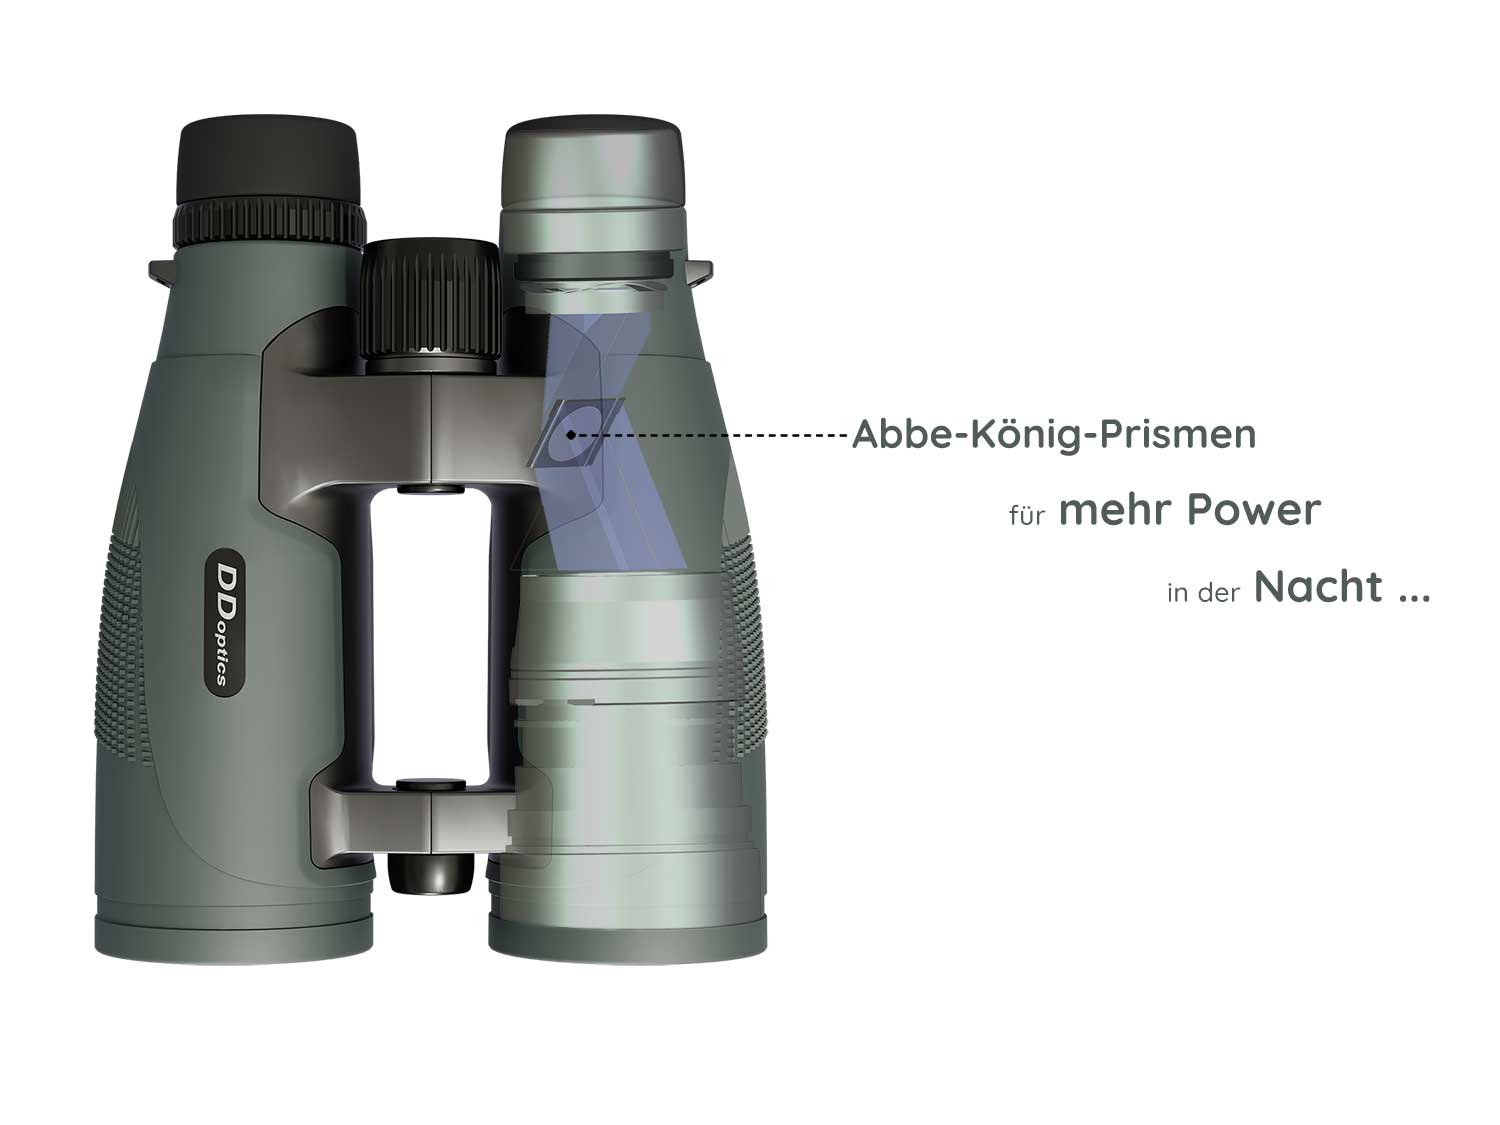 DDoptics Pirschler hunt binocular with Abbe-König prisms